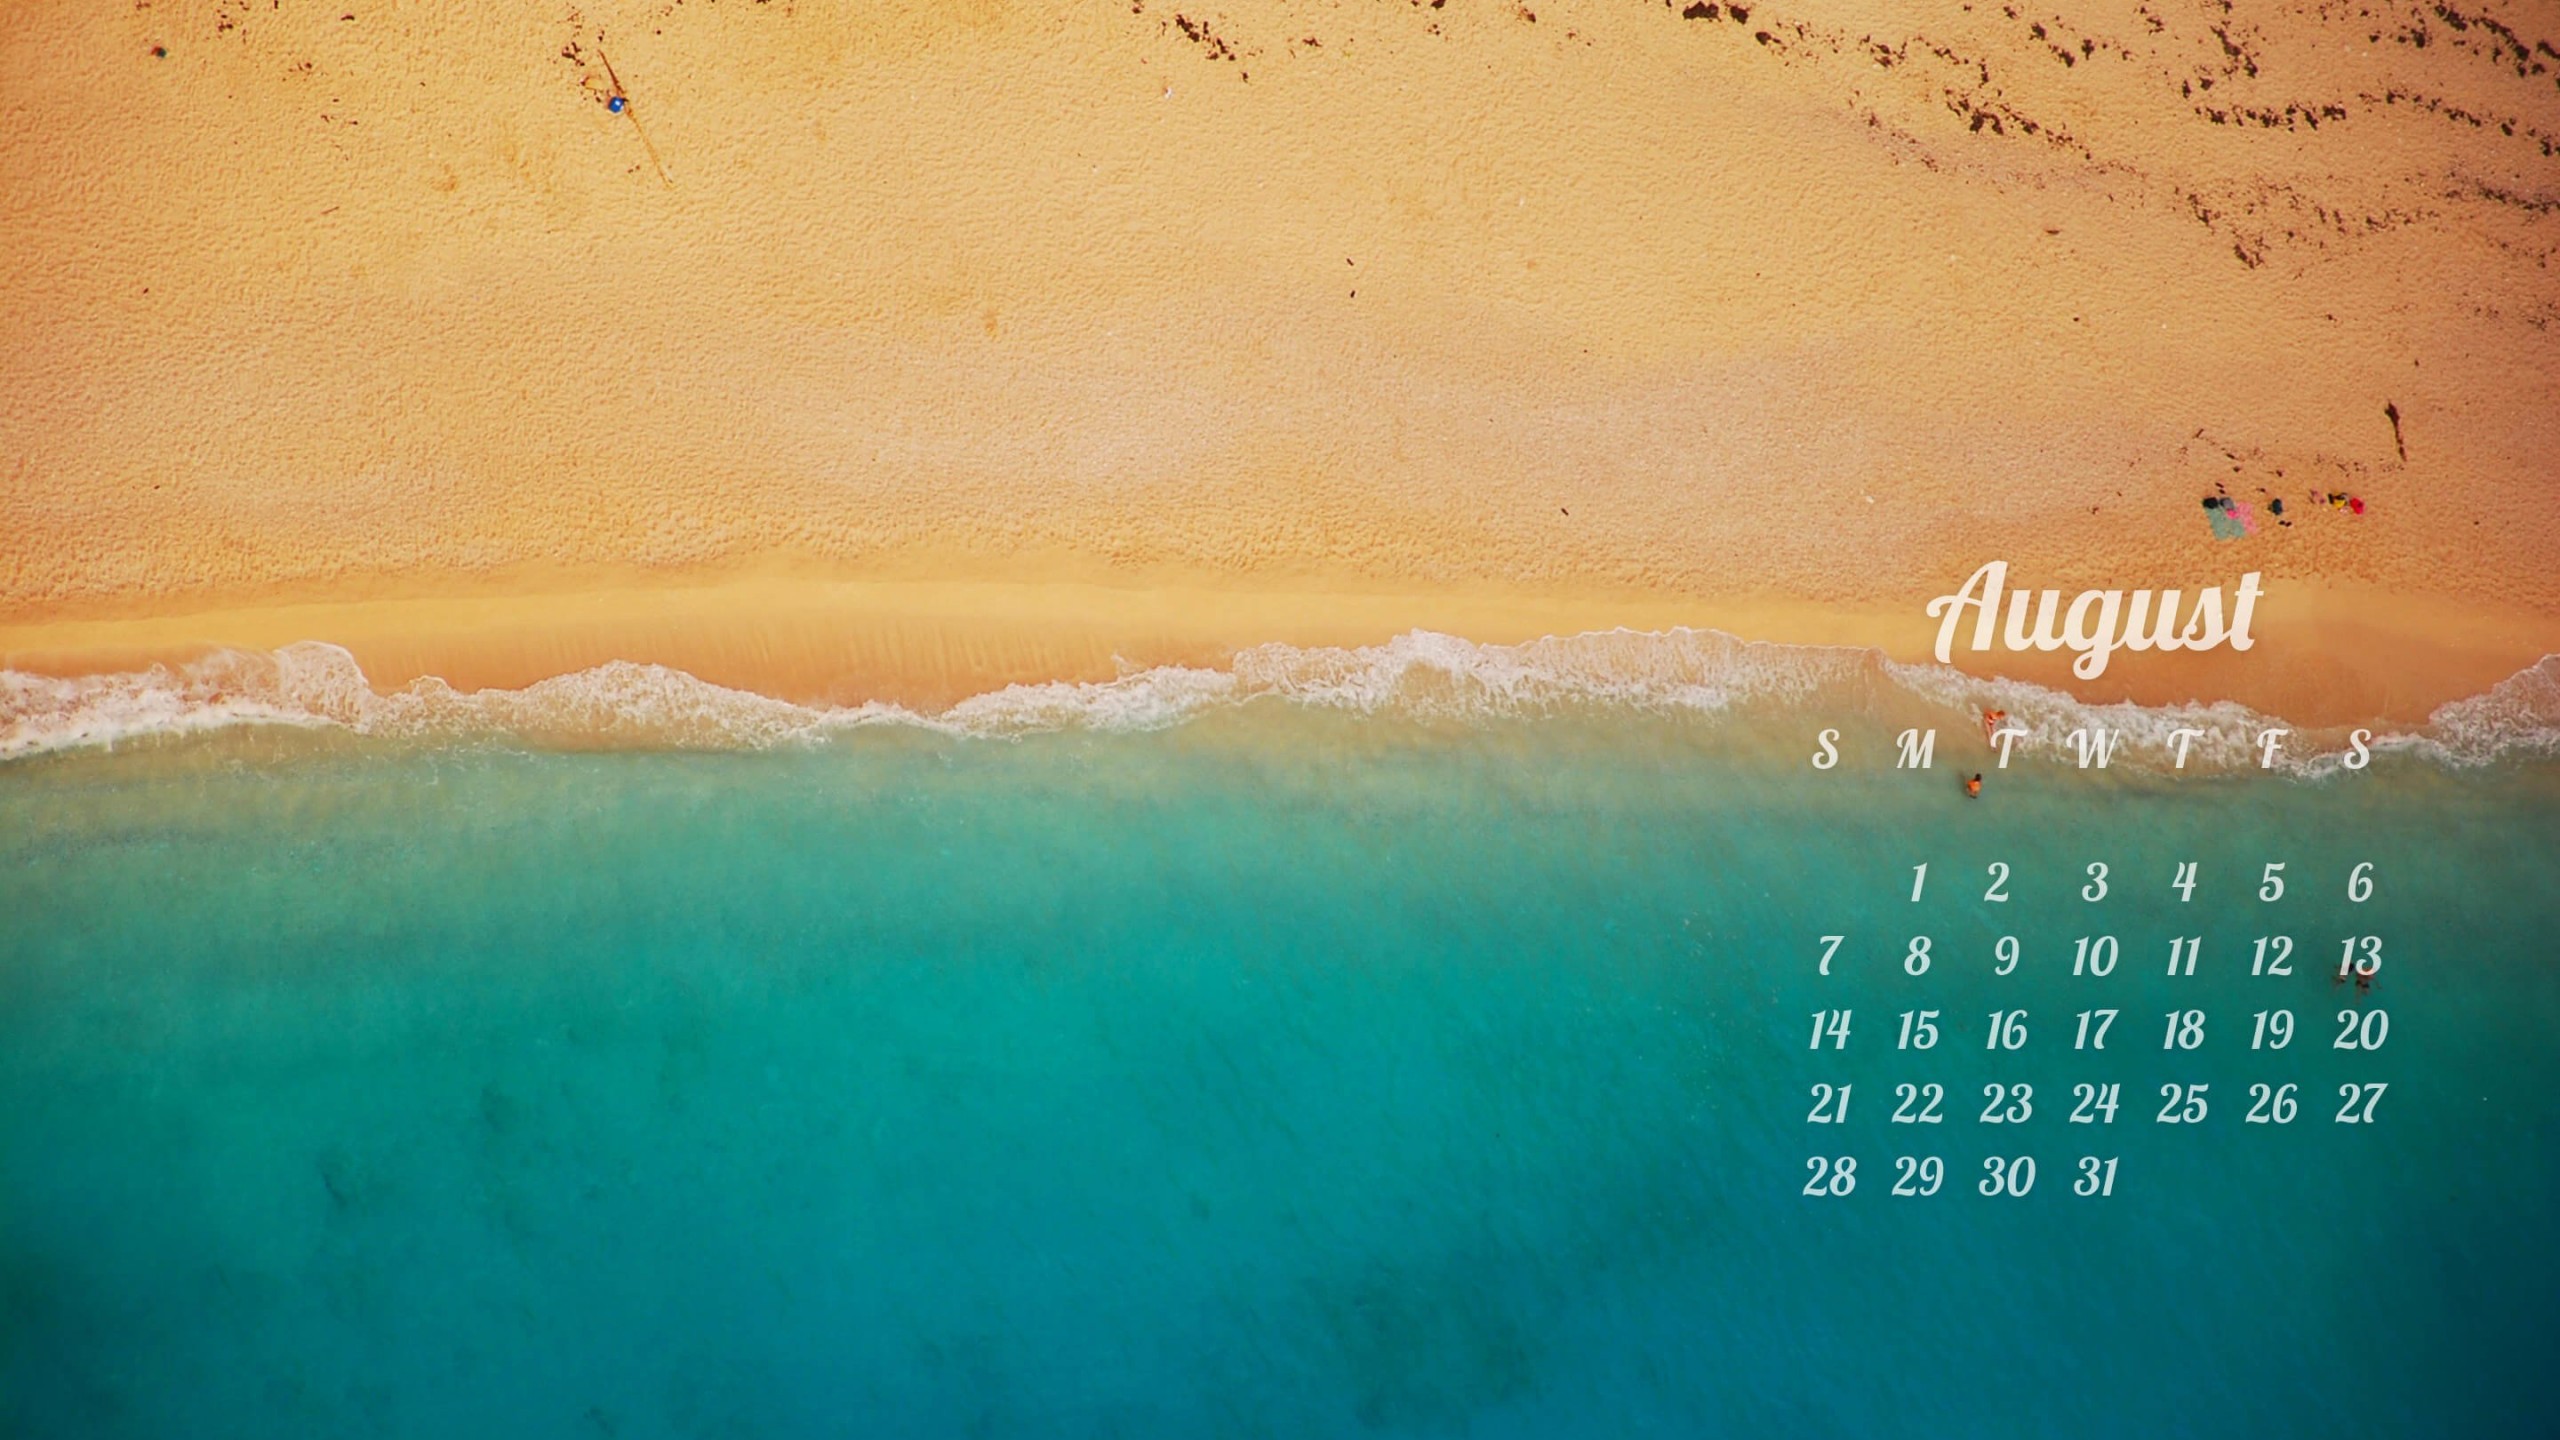 August 2016 Calendar Wallpaper for Desktop 2560x1440